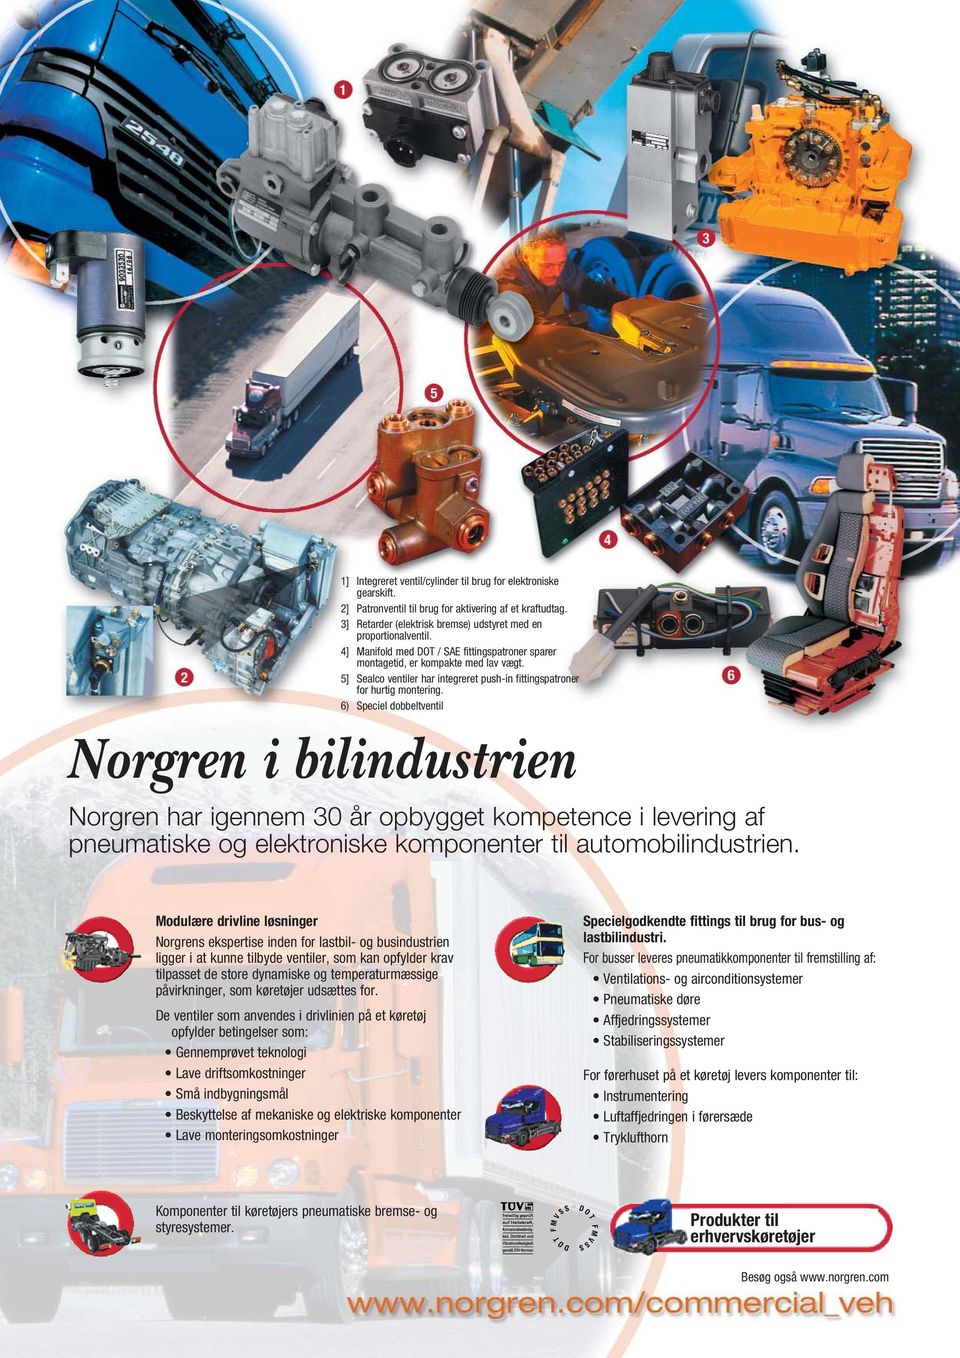 6) Speciel dobbeltventil Norgren i bilindustrien Norgren har igennem 30 år opbygget kompetence i levering af pneumatiske og elektroniske komponenter til automobilindustrien.